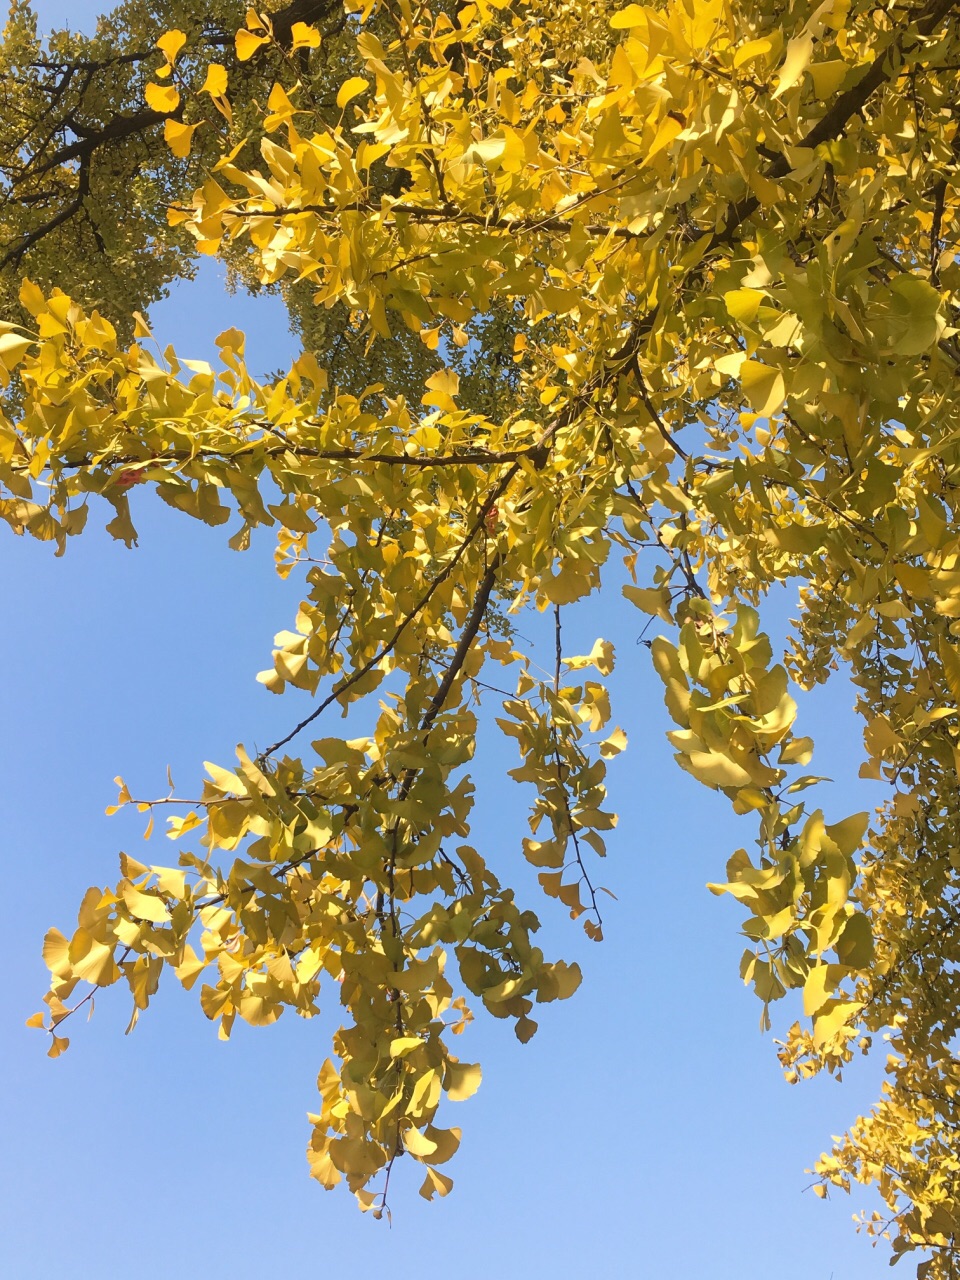 古银杏树,许是阳光照射的不均匀,呈现一半青绿色,一半金黄的多面风景